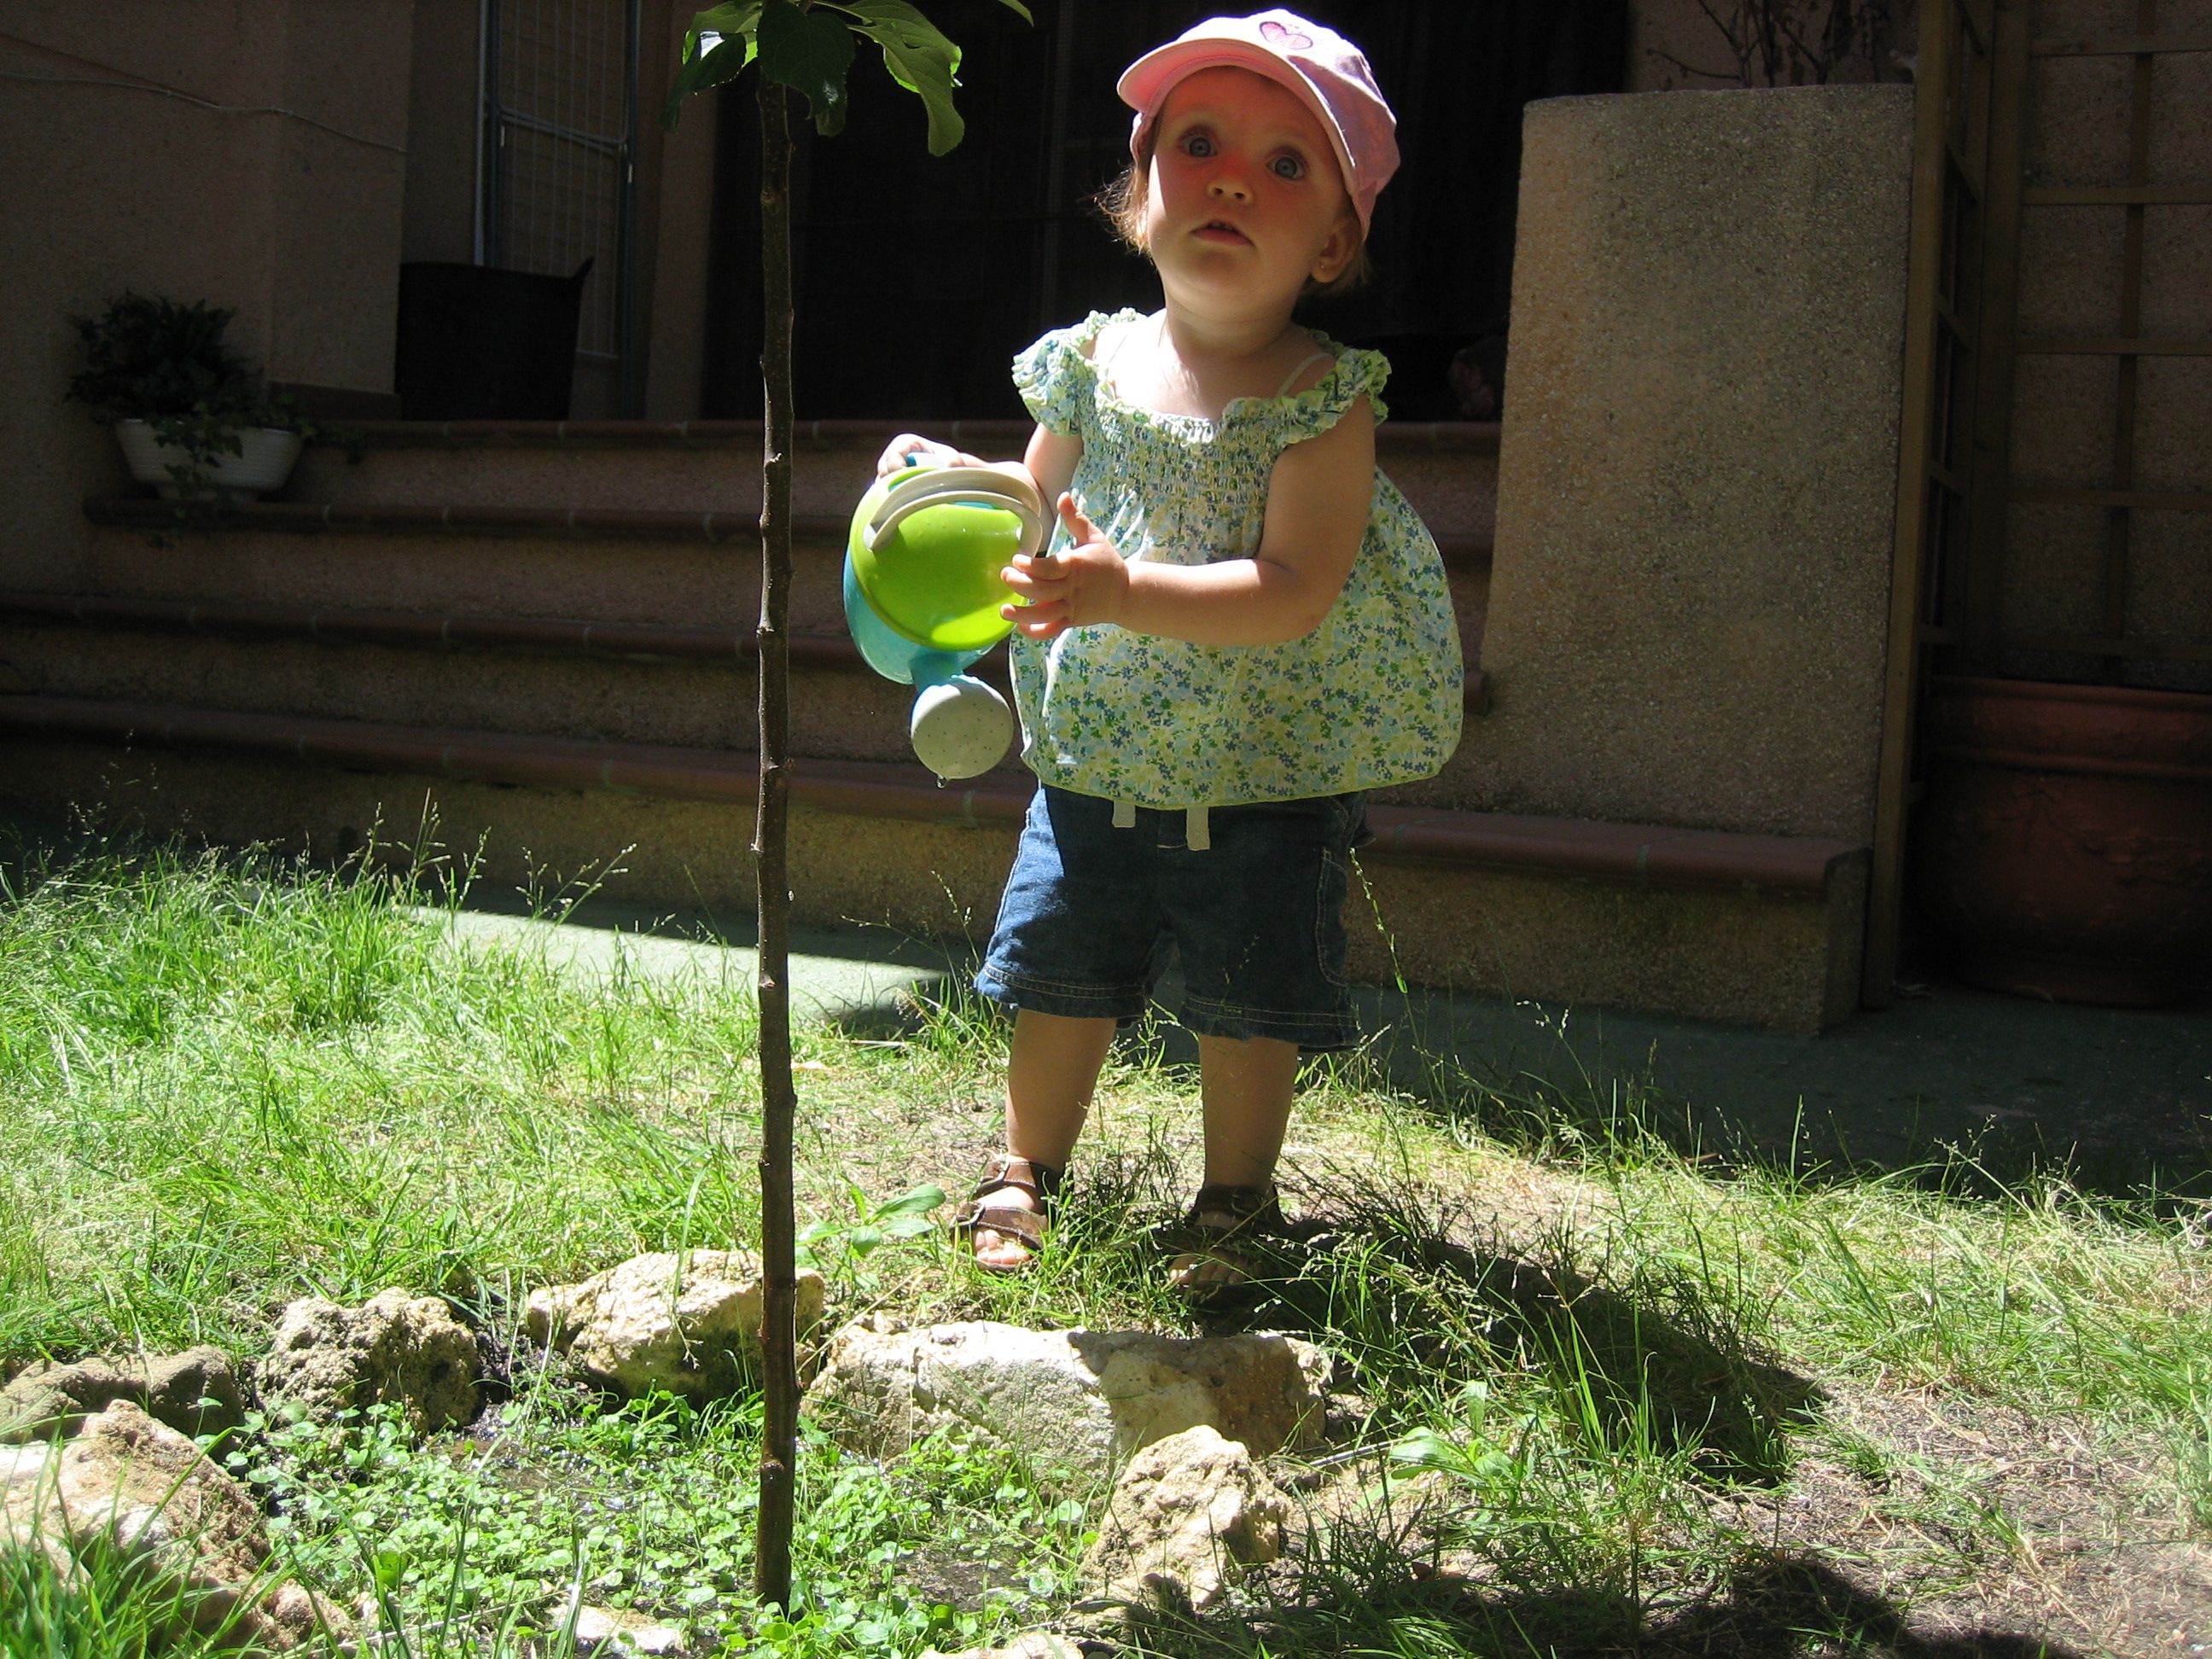 Sophia watering the tree.